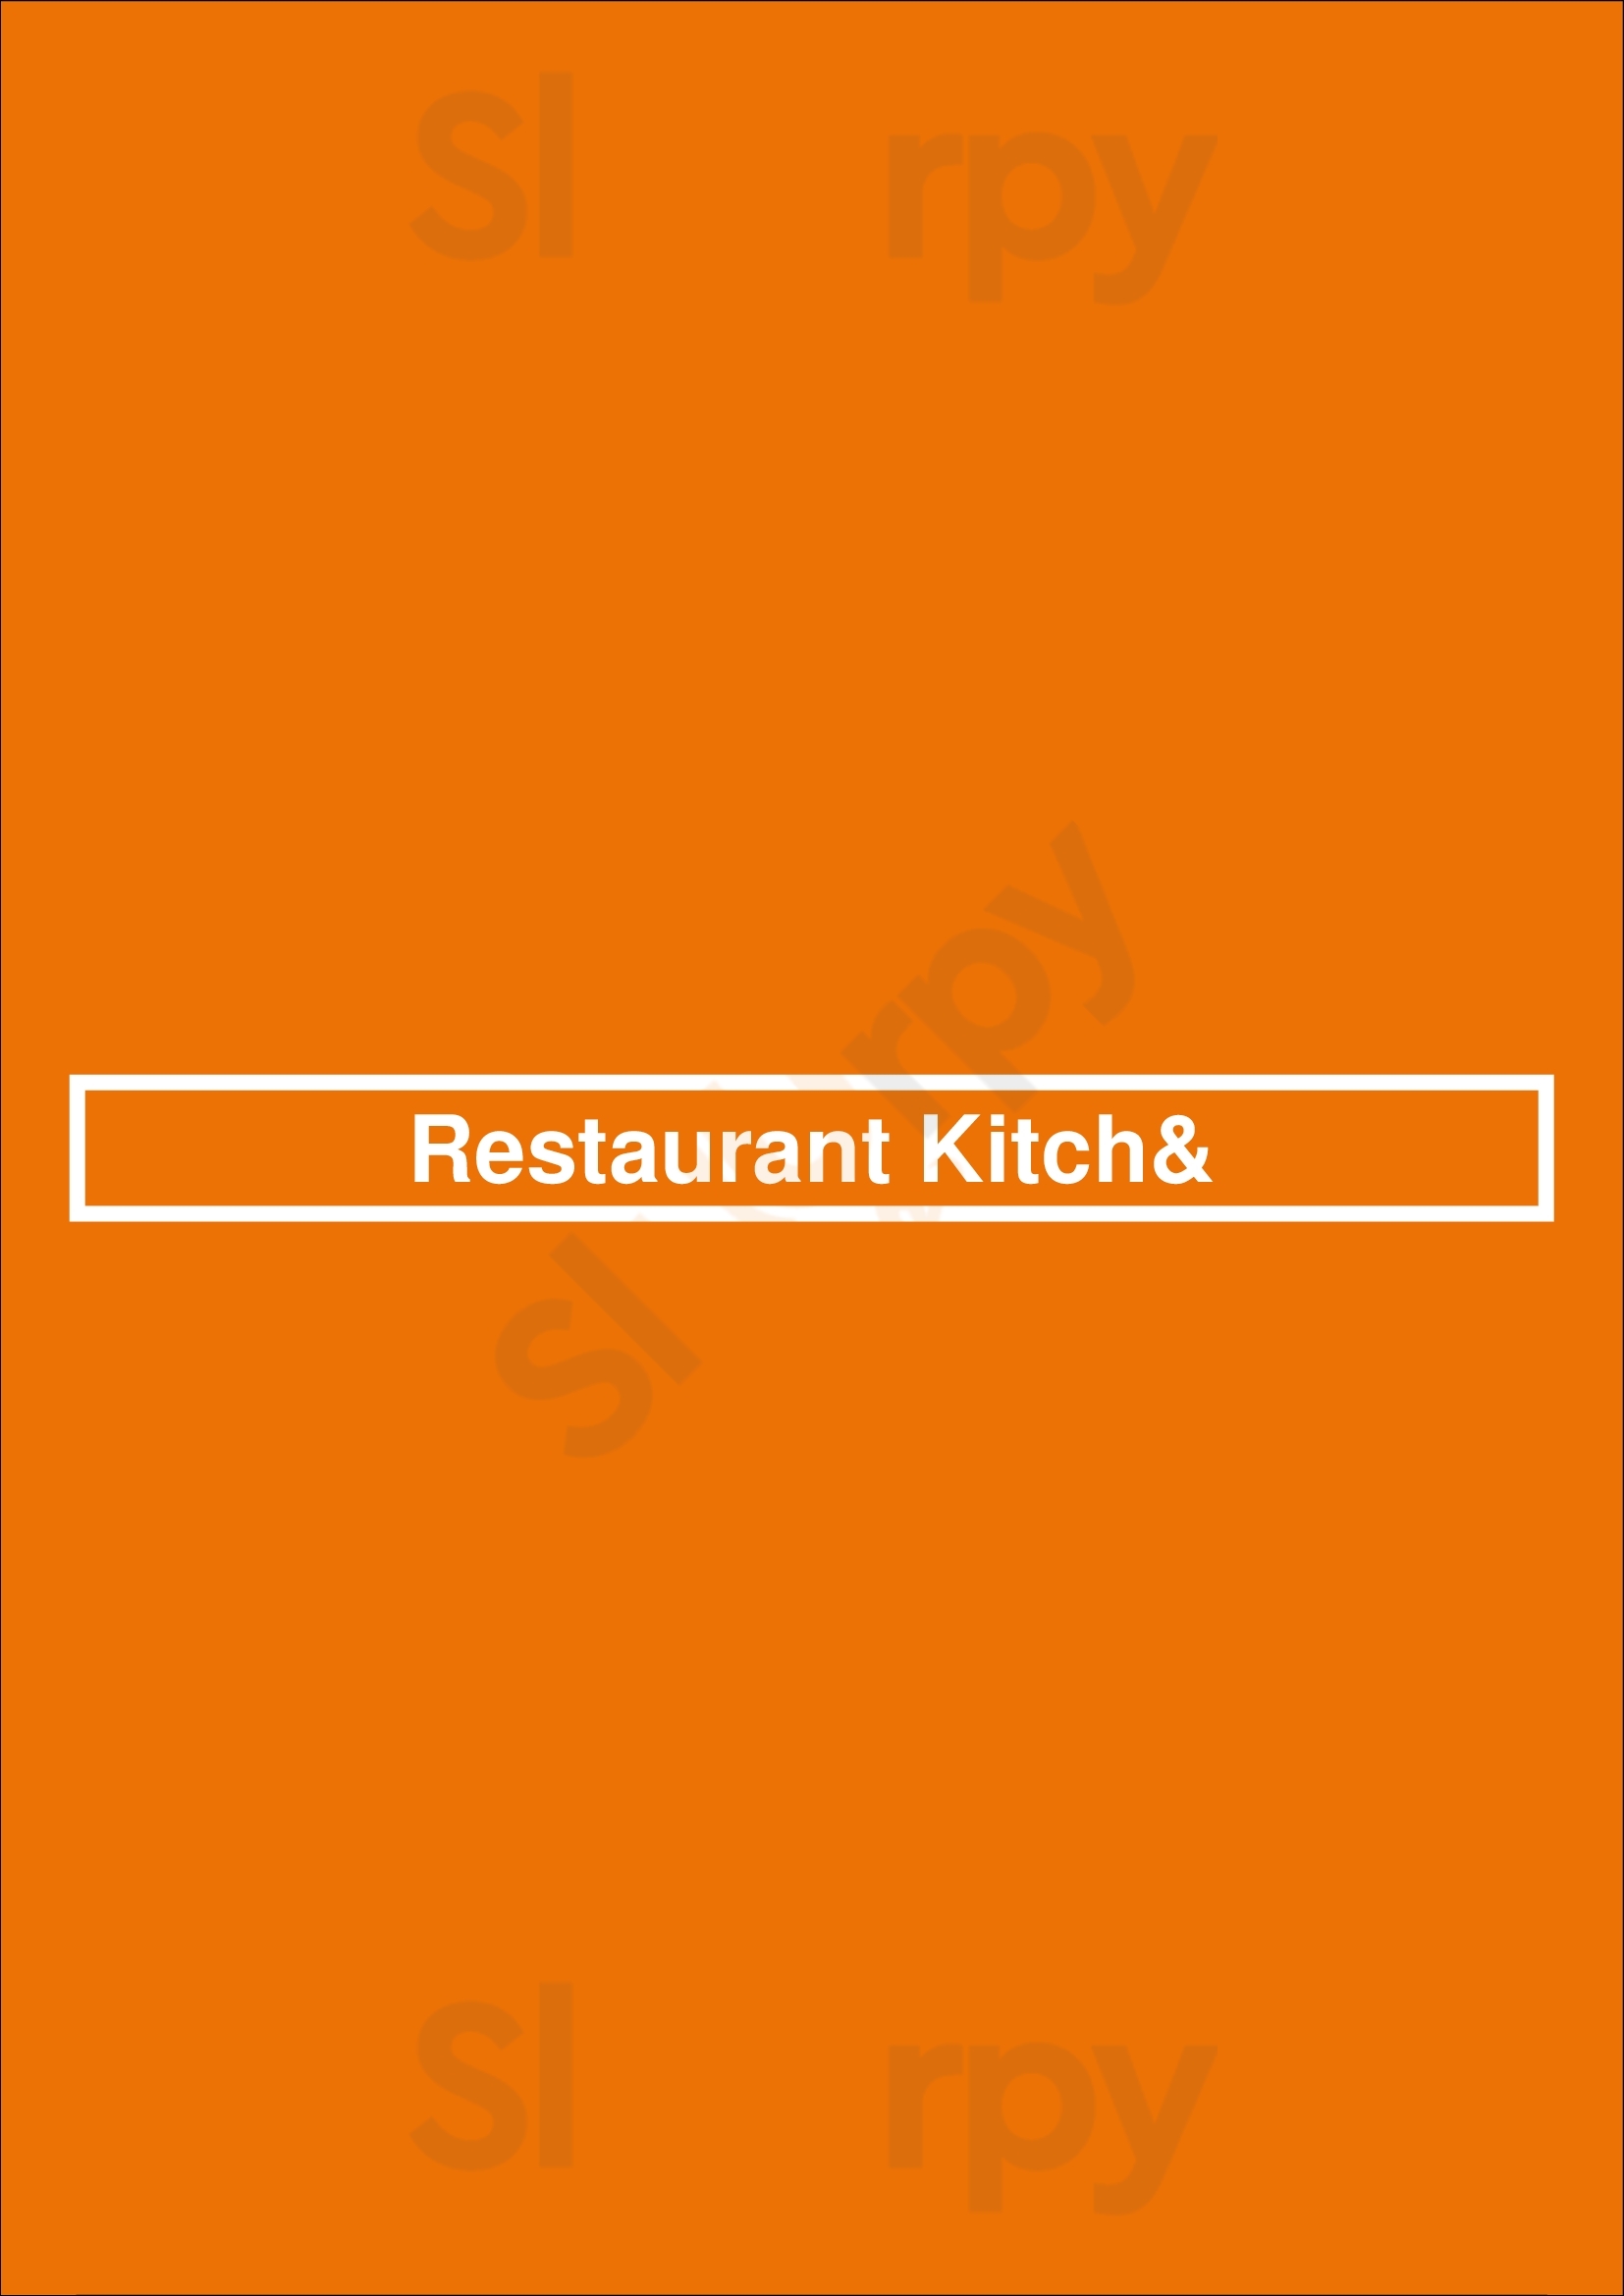 Restaurant Kitch& Leiden Menu - 1